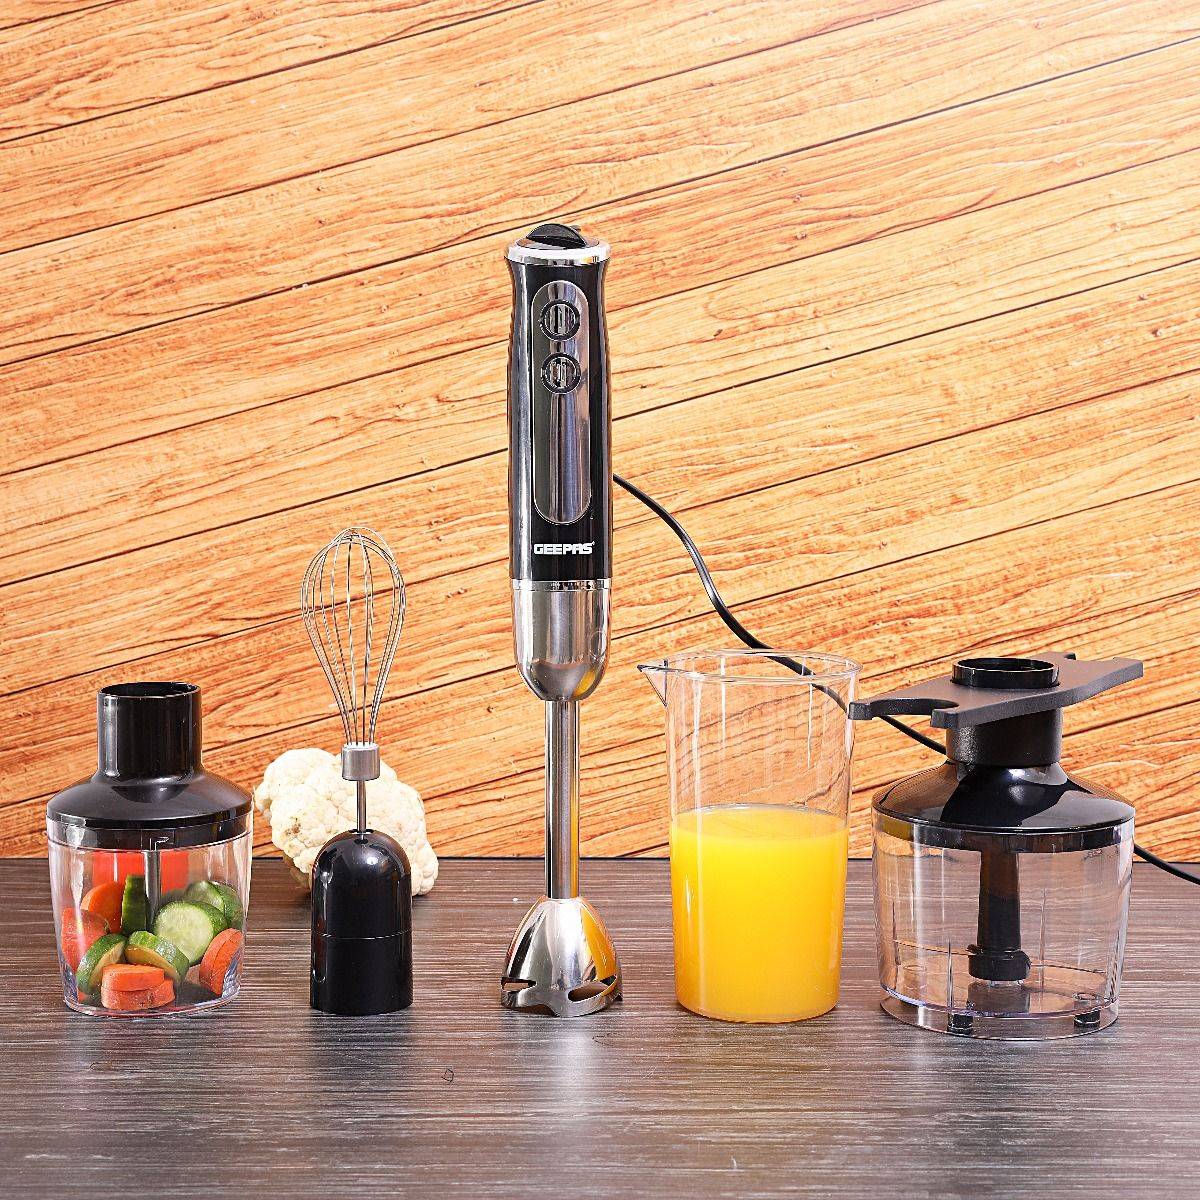 Geepas Hand Blender 600Watts Black | Kitchen Appliances | Halabh.com